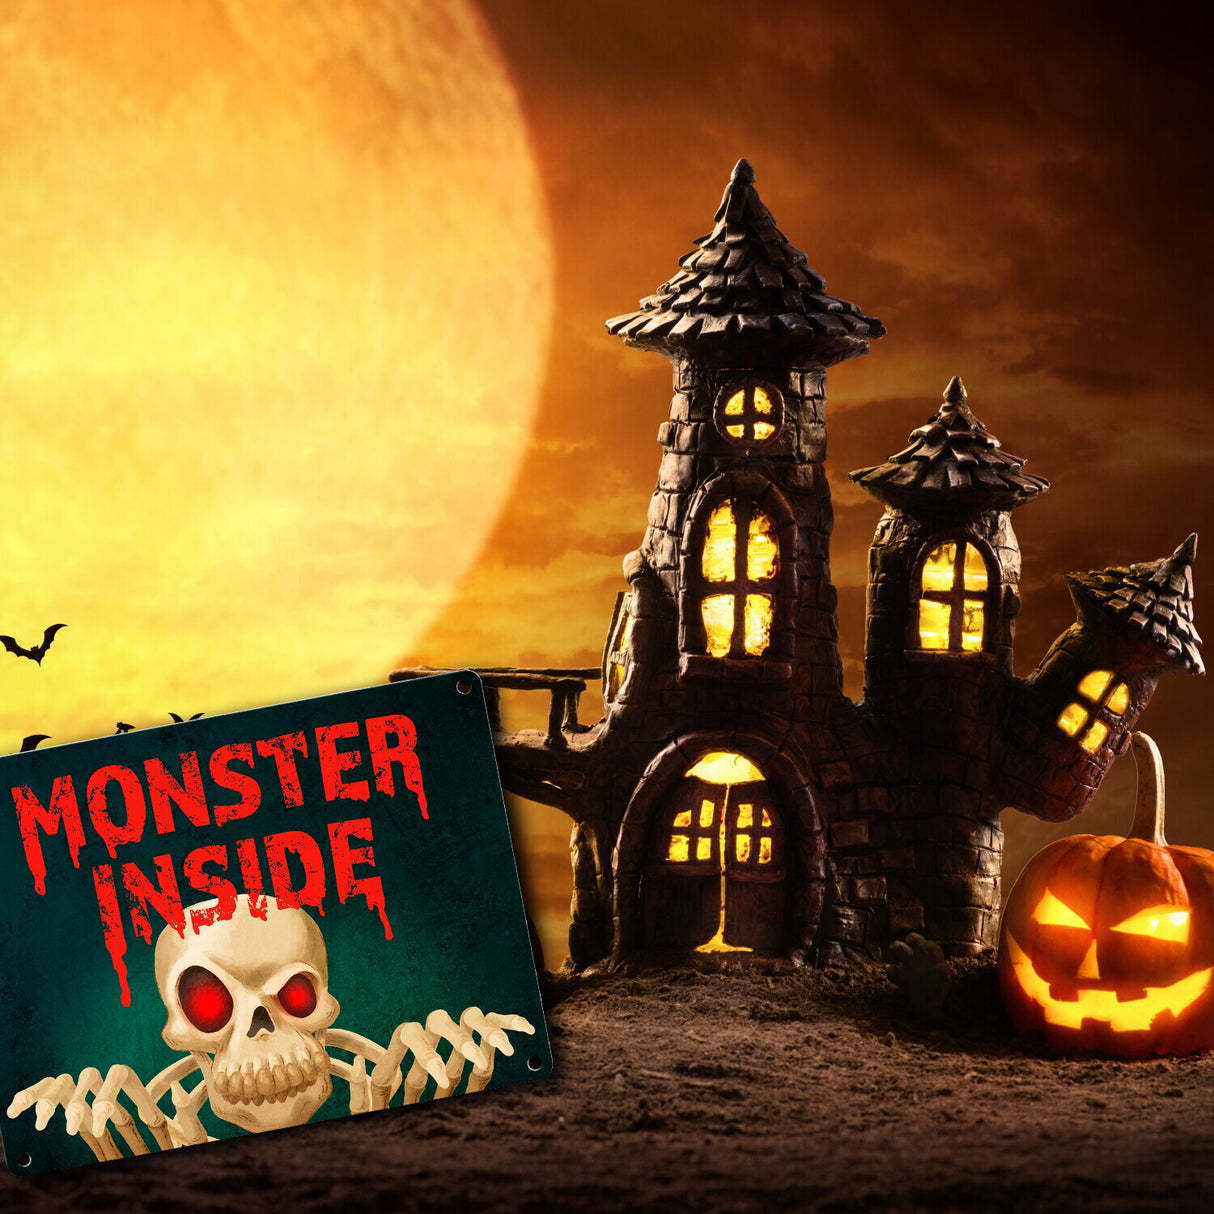 Monster Inside Halloween Metallschild mit gruseligem Skelett Motiv